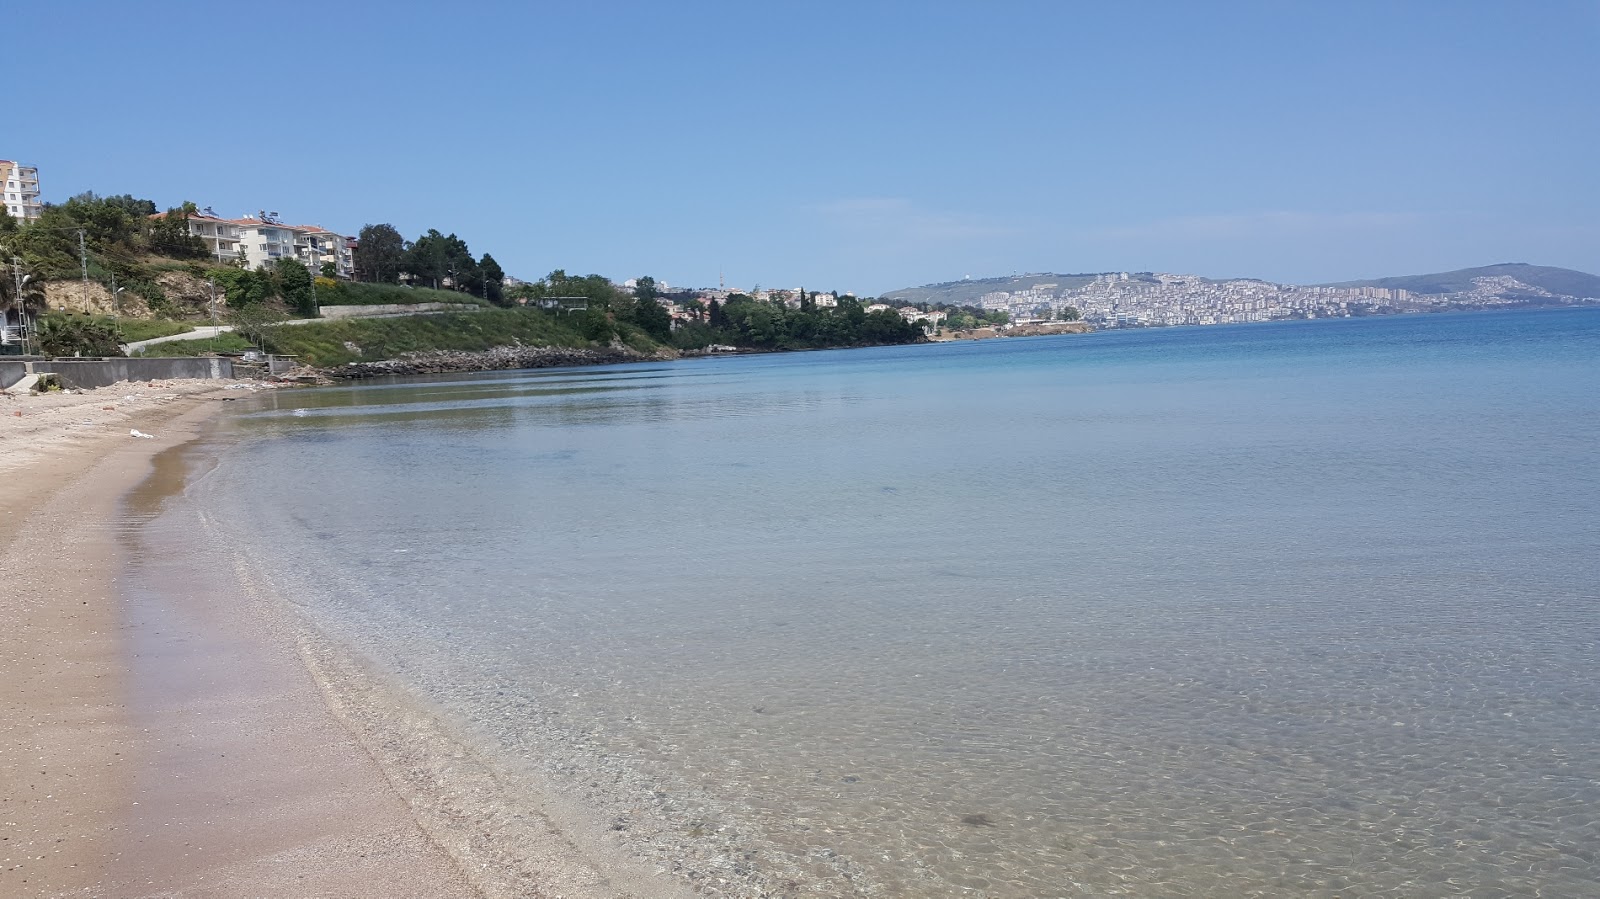 Tuna Beach Sinop'in fotoğrafı doğrudan plaj ile birlikte